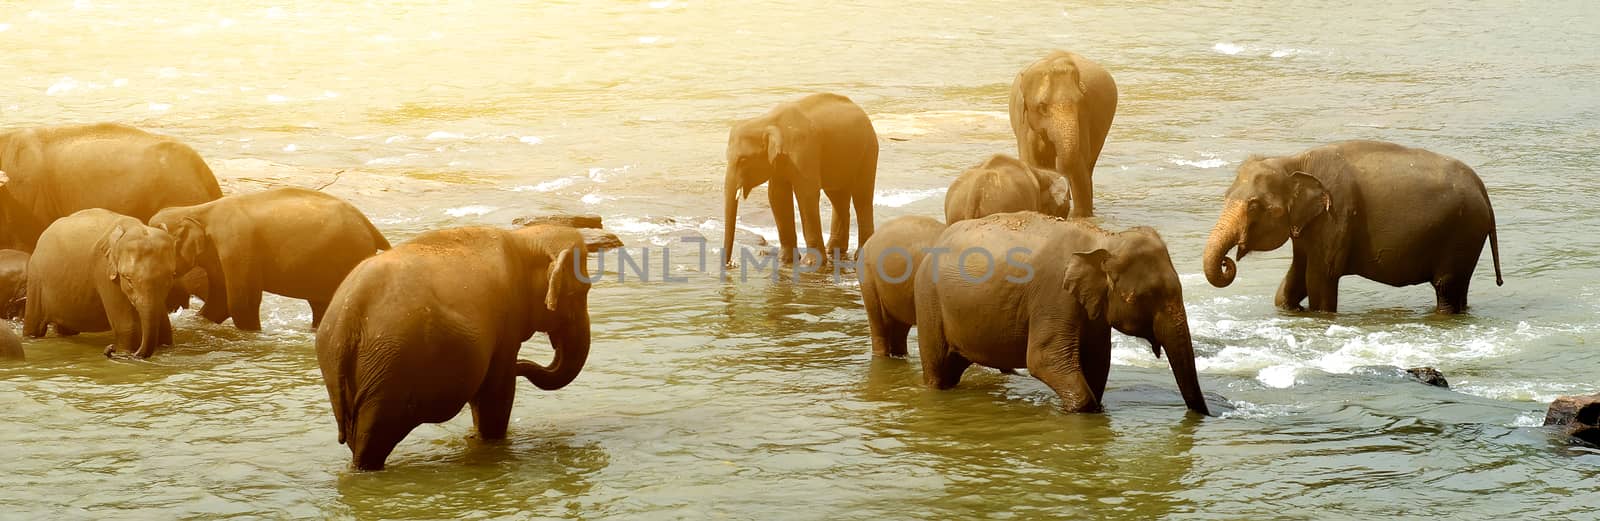 Big bathing elephants by Givaga